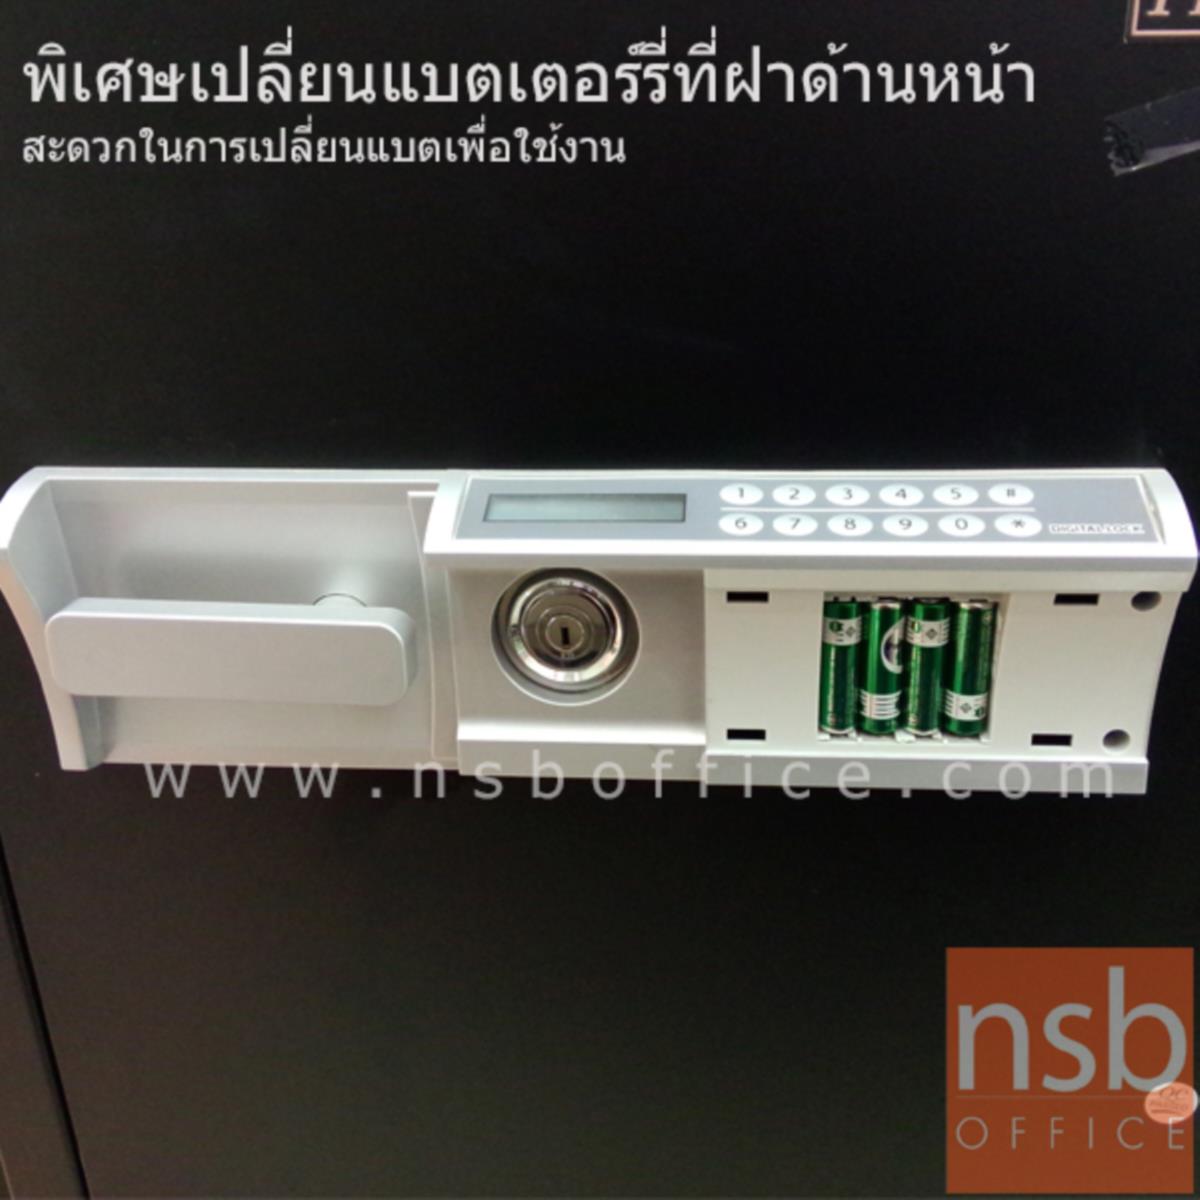 ตู้เซฟดิจิตอล 250 กก.  รุ่น PRESIDENT-SB50D2  มี 1 กุญแจ 1 รหัส (รหัสใช้กดหน้าตู้)